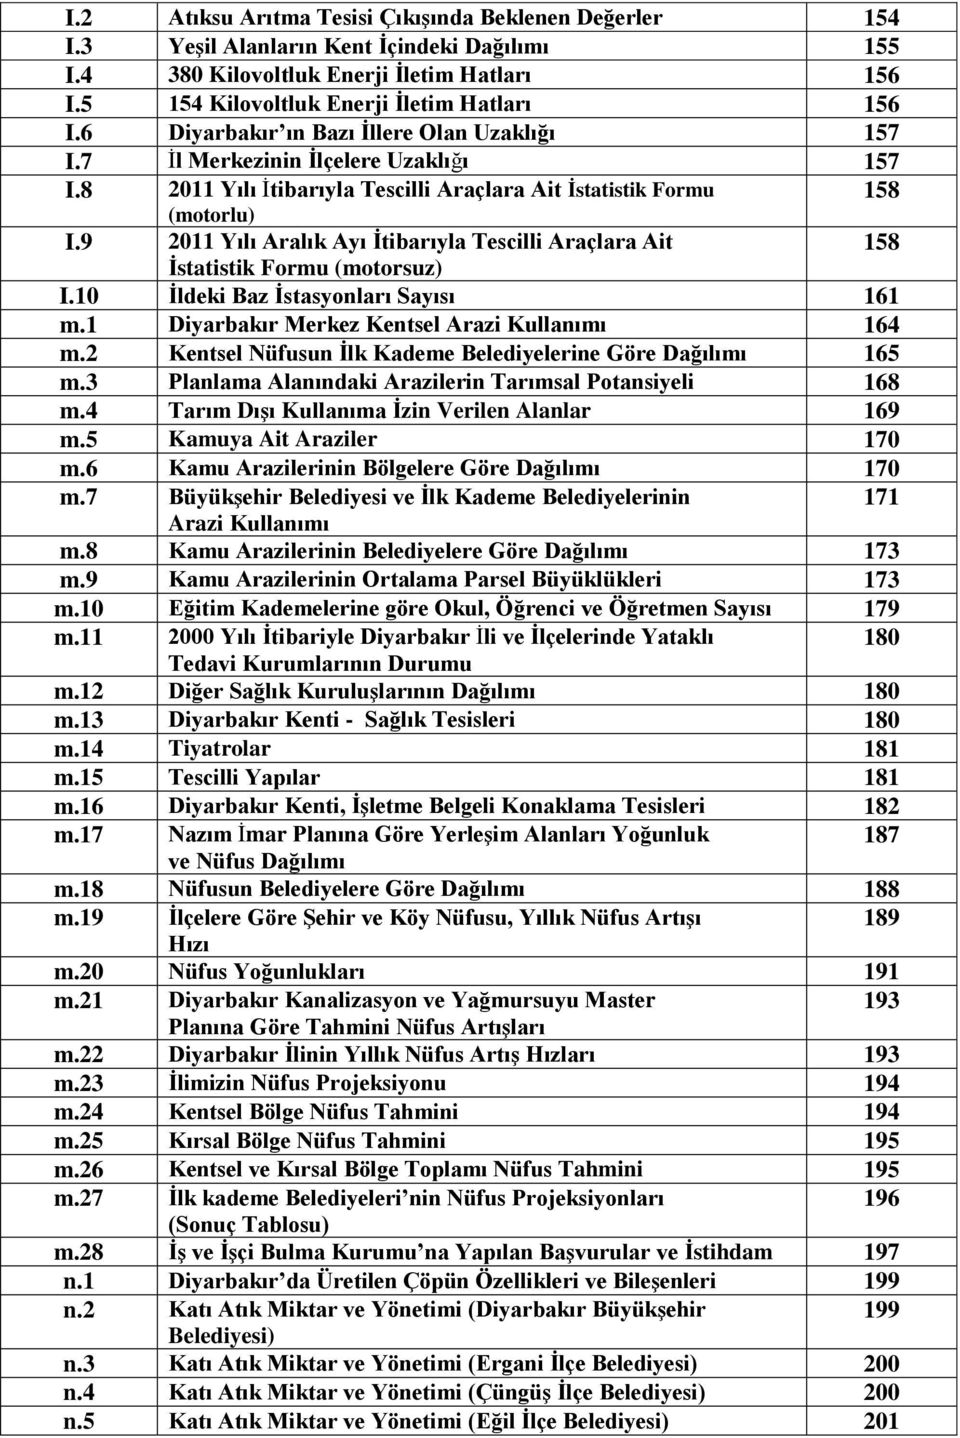 9 2011 Yılı Aralık Ayı İtibarıyla Tescilli Araçlara Ait 158 İstatistik Formu (motorsuz) I.10 İldeki Baz İstasyonları Sayısı 161 m.1 Diyarbakır Merkez Kentsel Arazi Kullanımı 164 m.